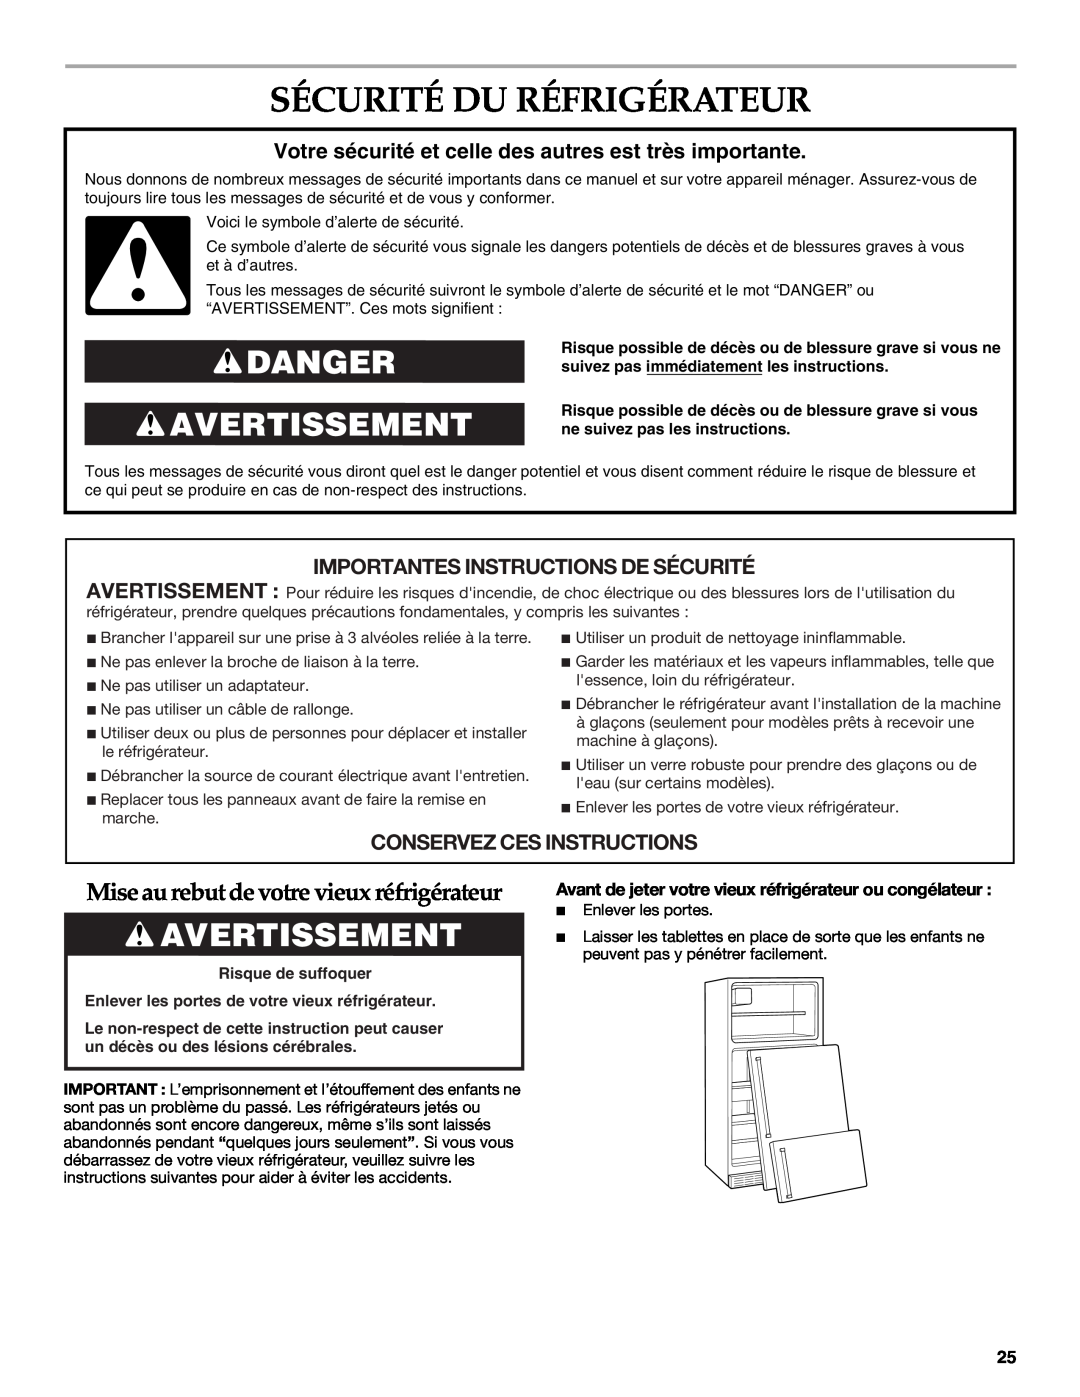 KitchenAid TOP-MOUNT REFRIGERATOR Sécurité Du Réfrigérateur, Danger Avertissement, Importantes Instructions De Sécurité 